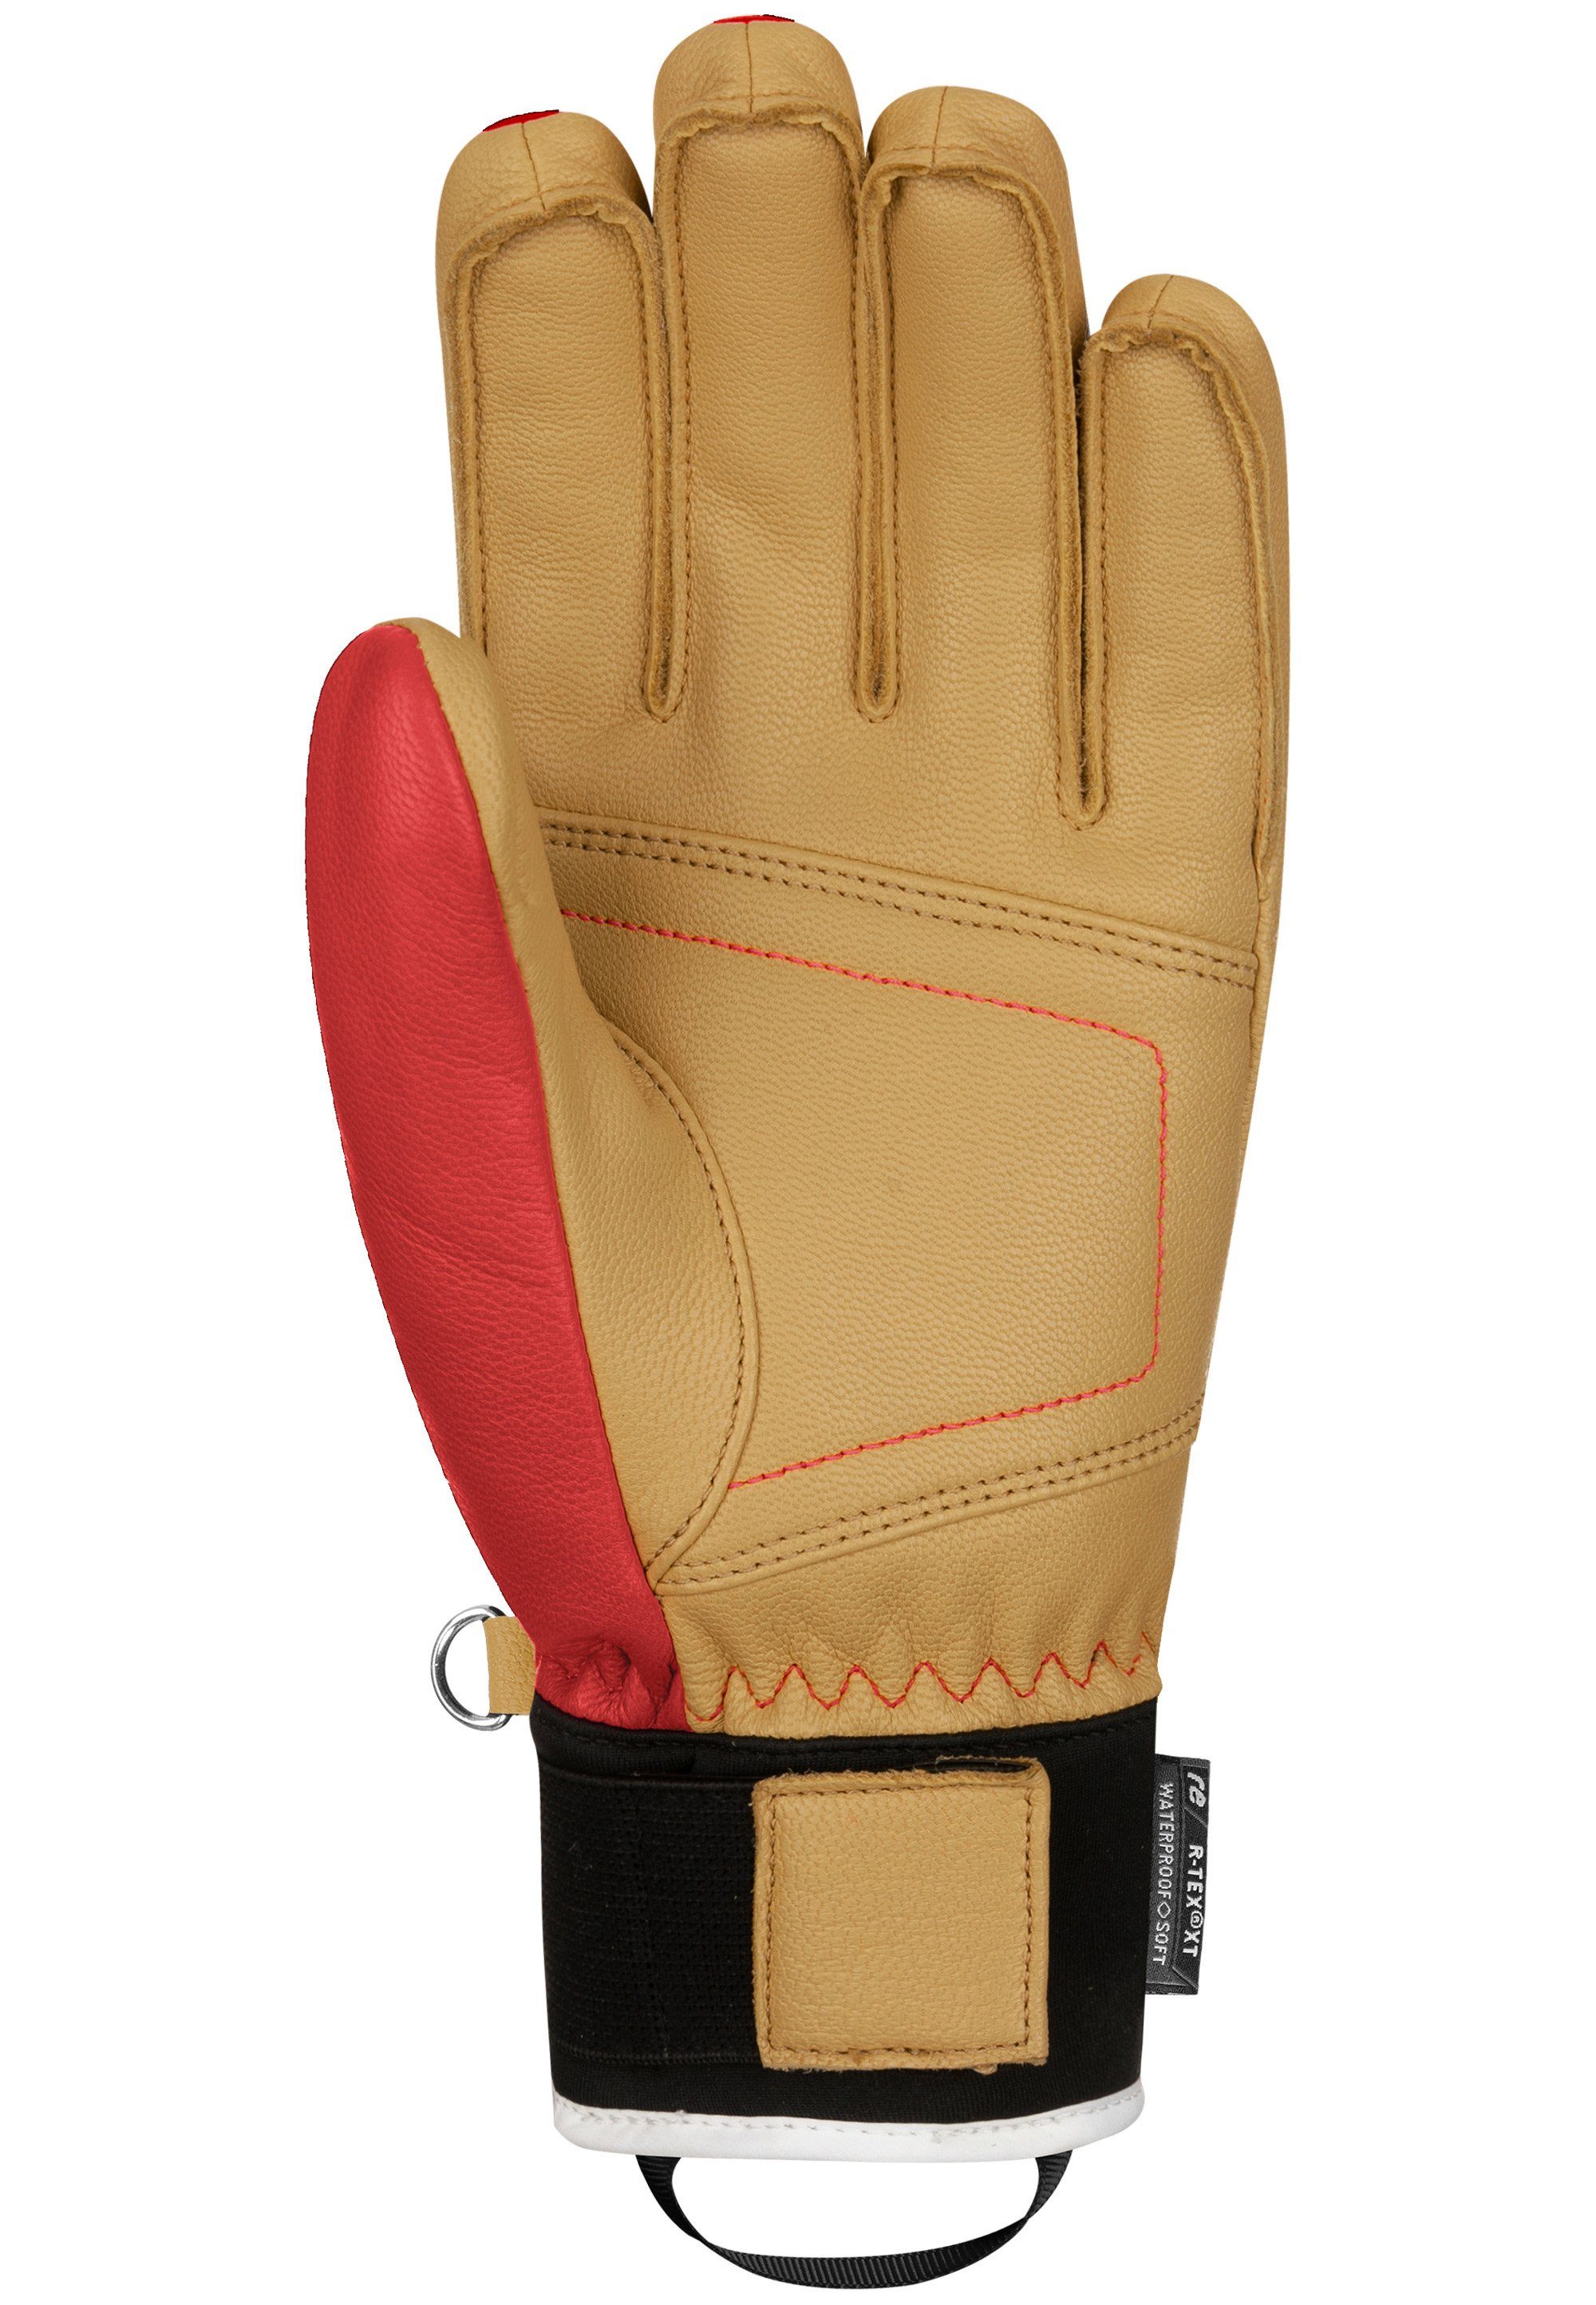 R-TEX® aus Material atmungsaktivem Reusch XT Skihandschuhe Highland rot-beige und wasserdichtem